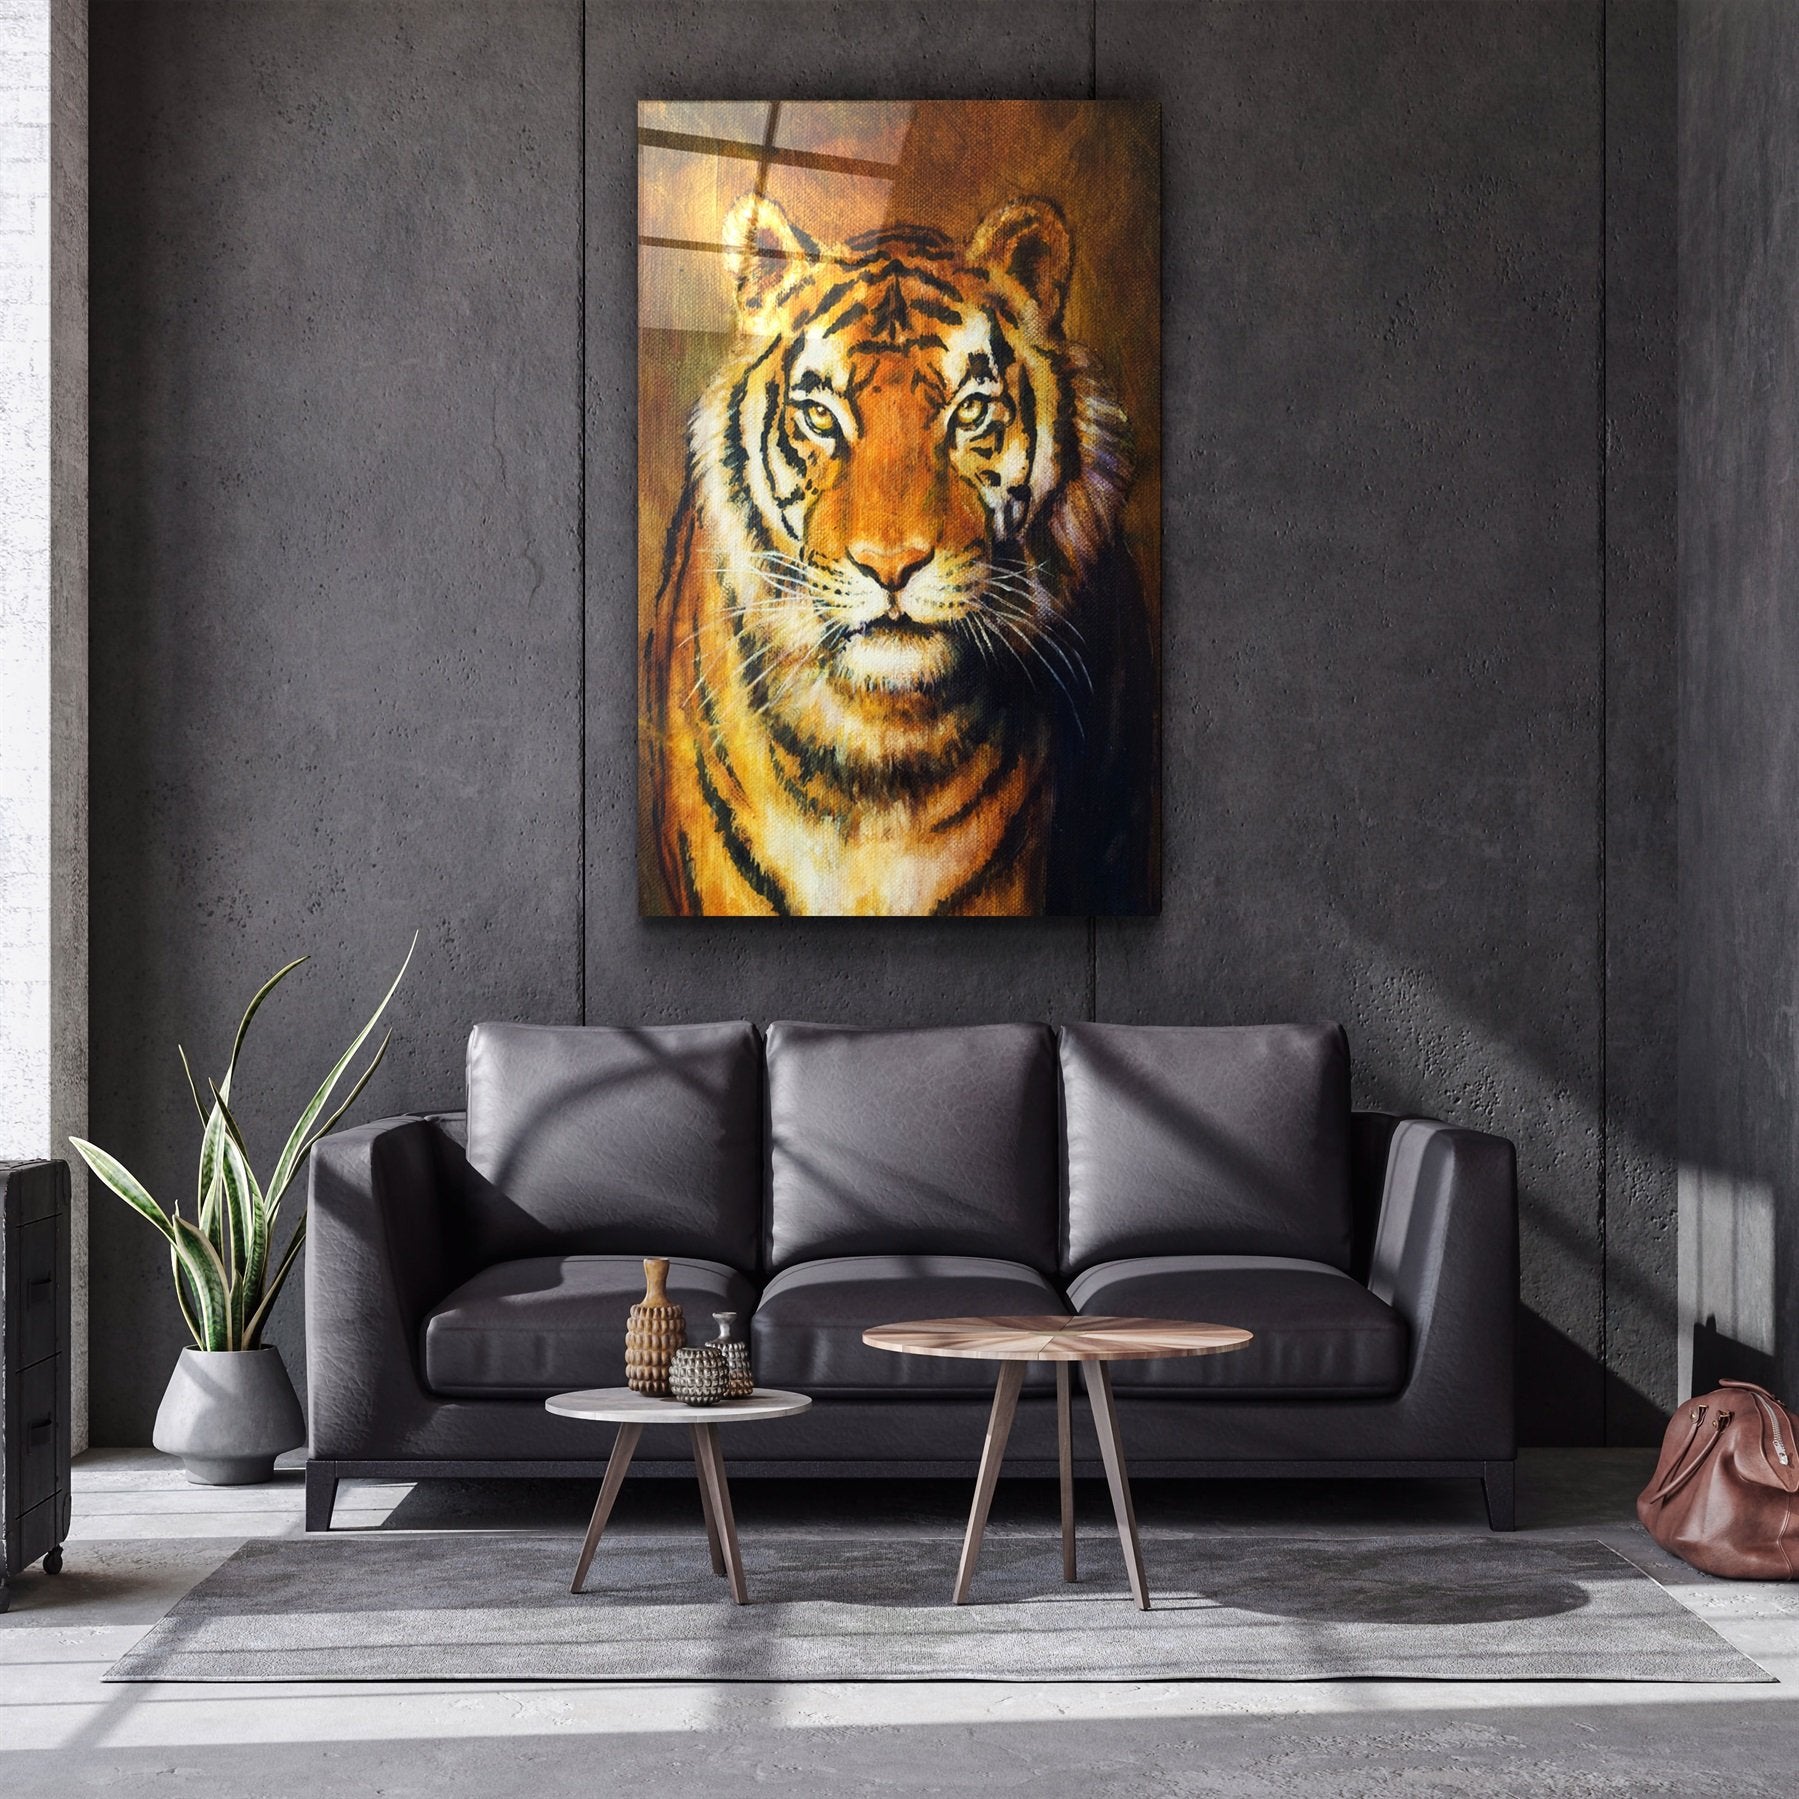 ・"Tiger 5"・Glass Wall Art